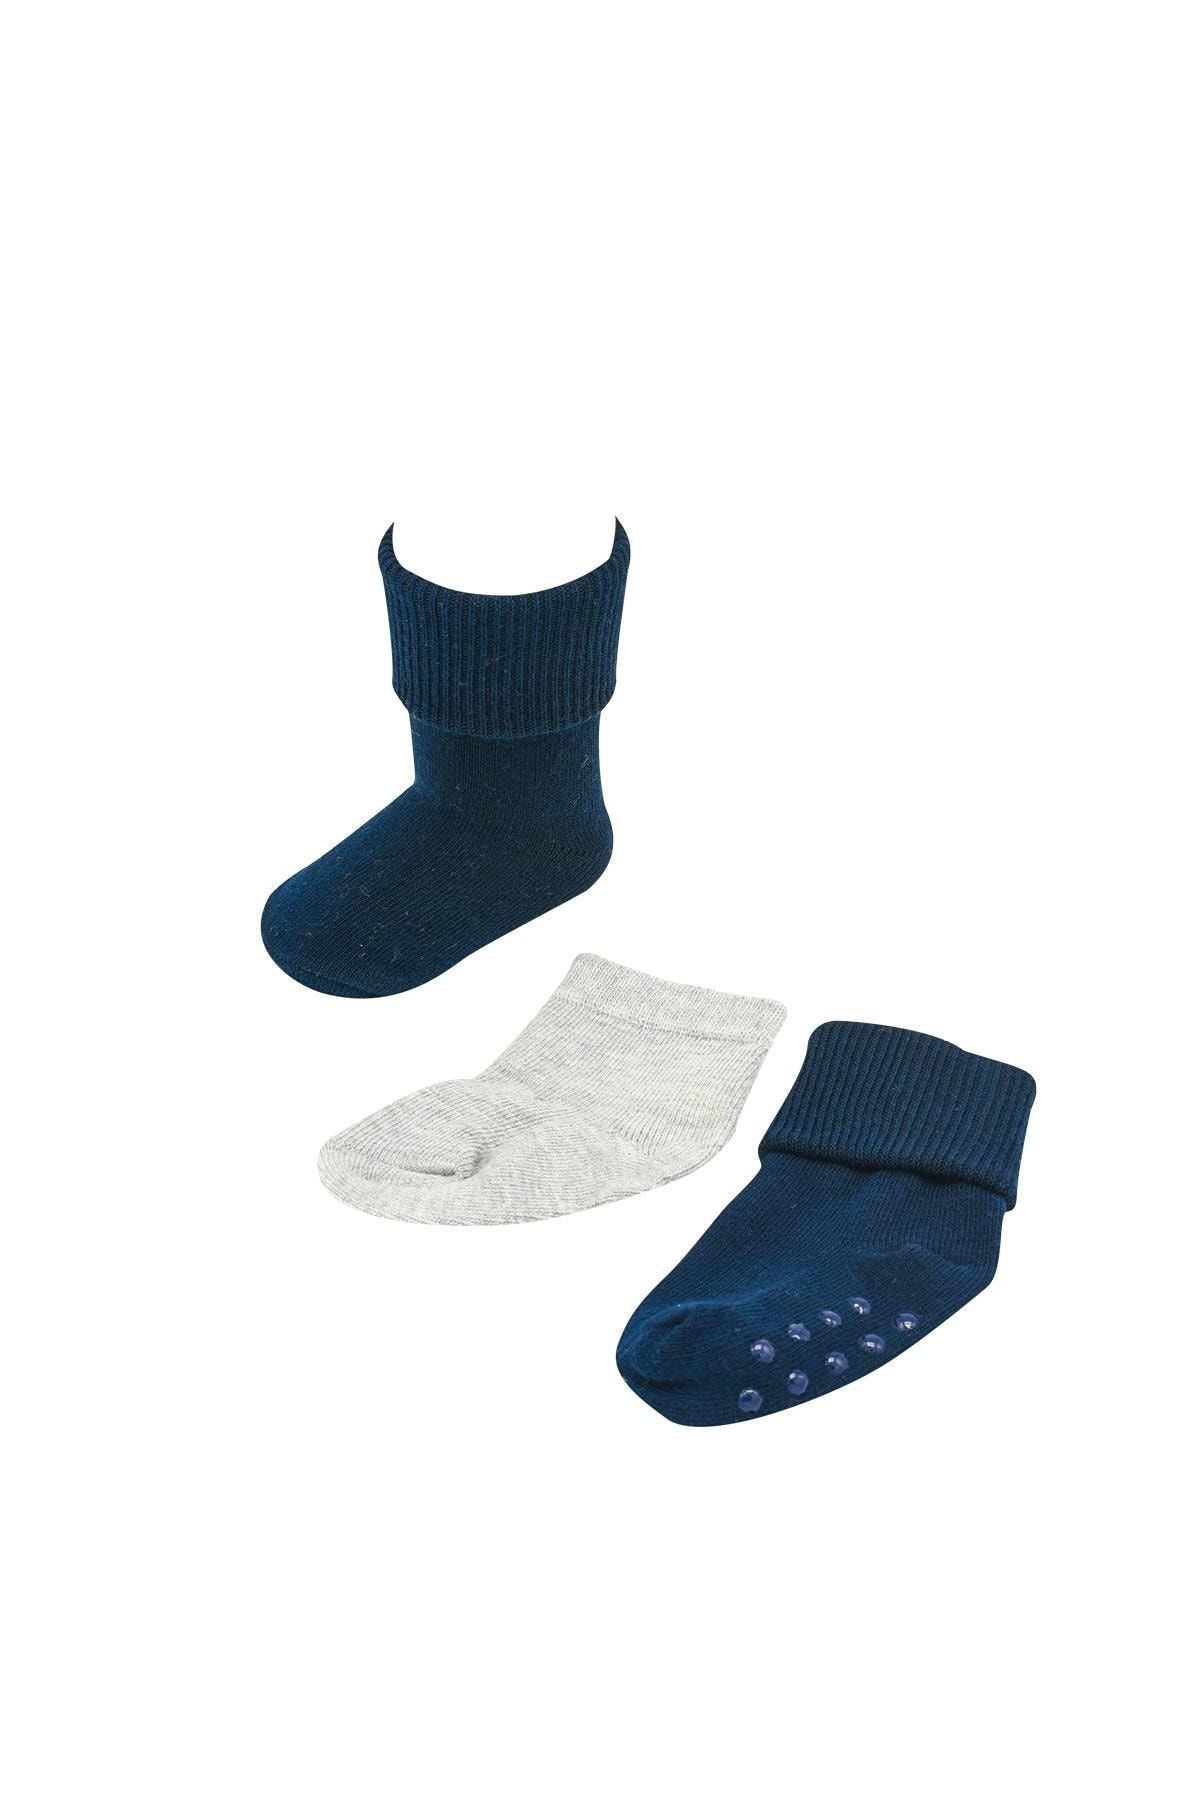 Katamino Lacivert-gri 2 Li Tek Çift Altı Kaydırmaz Erkek Bebek Soket Çorabı